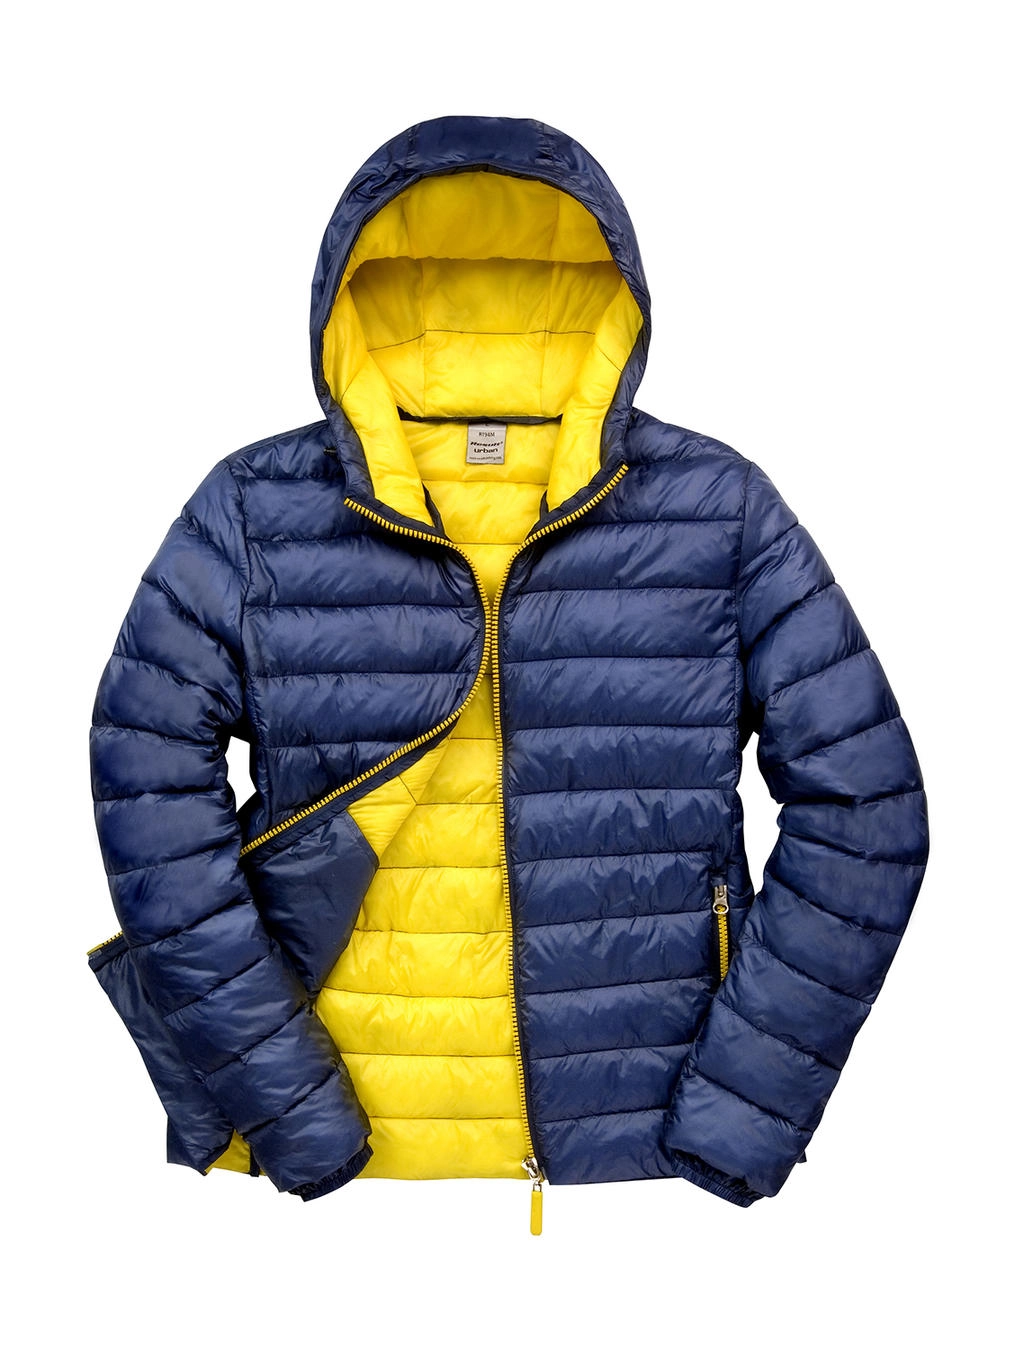 Snow Bird Hooded Jacket zum Besticken und Bedrucken in der Farbe Navy/Yellow mit Ihren Logo, Schriftzug oder Motiv.